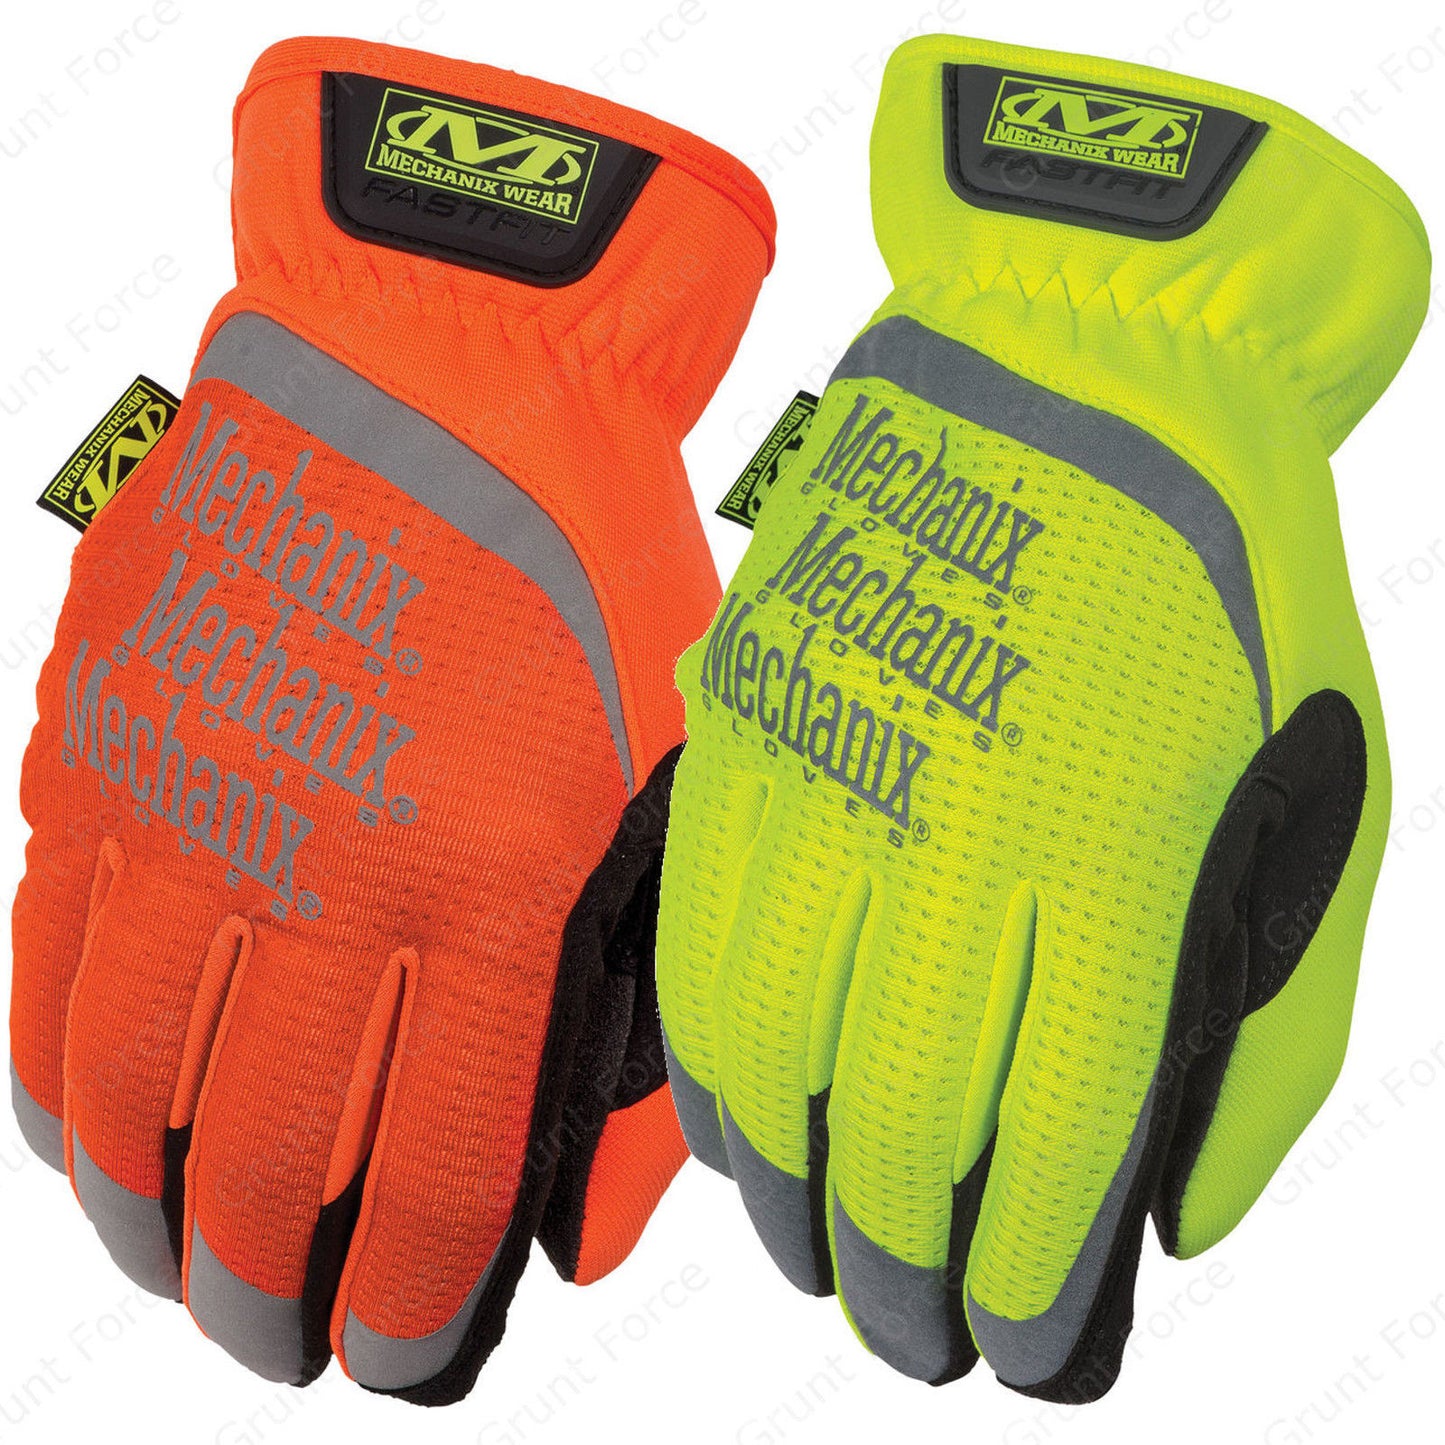 Mechanix Wear Hi-Viz FastFit Gloves - High Visibility Premium Work Glove